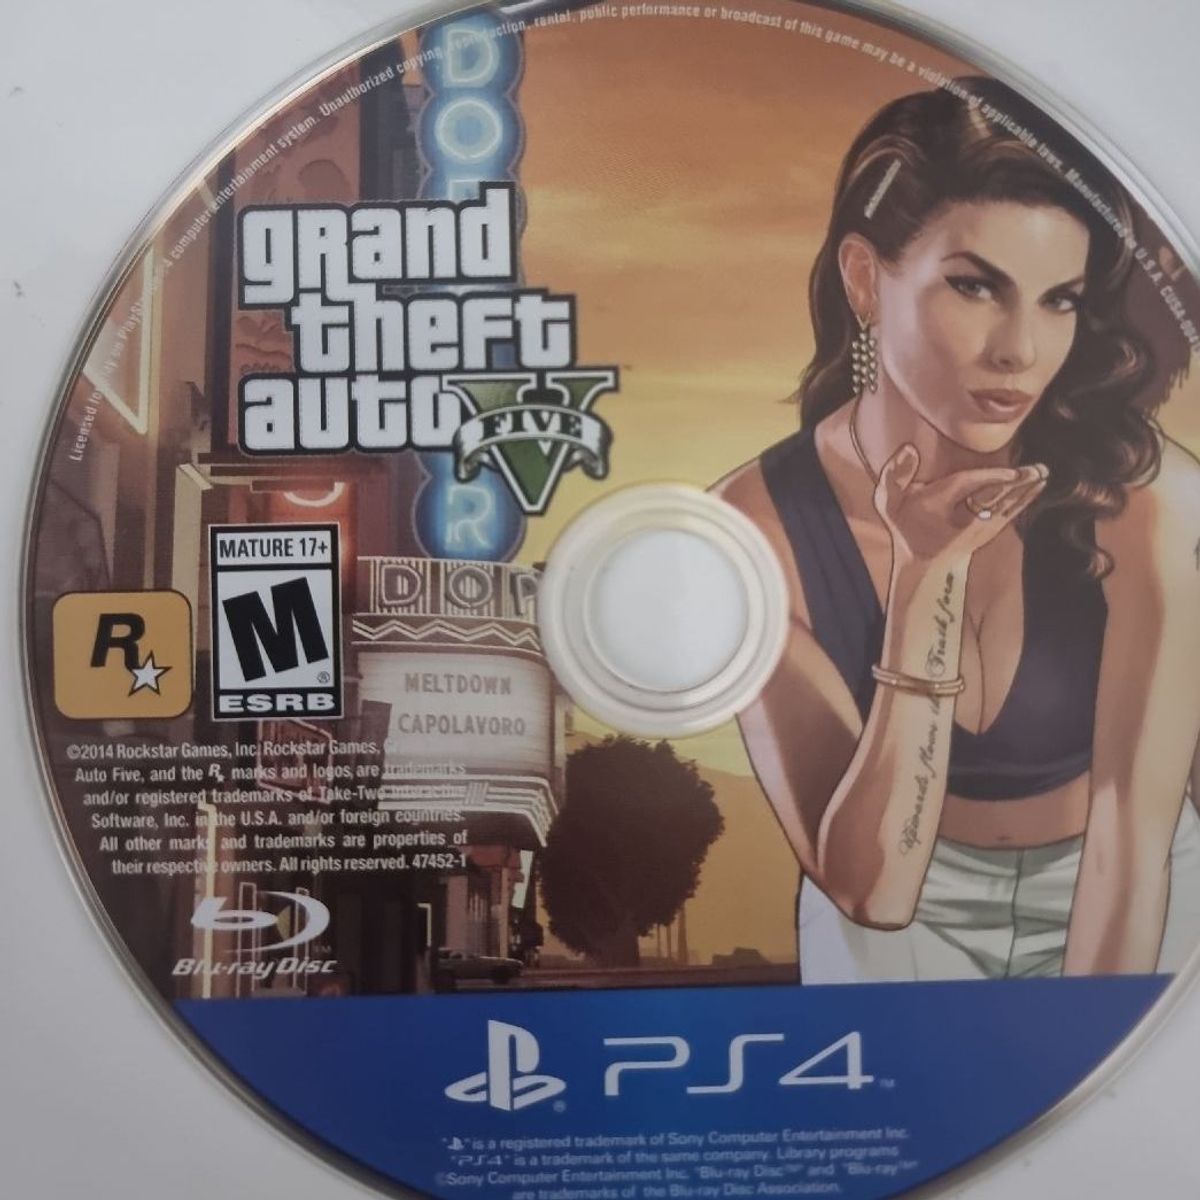 Comprar Grand Theft Auto 5 (GTA V) para PS4 - mídia física - Xande A Lenda  Games. A sua loja de jogos!